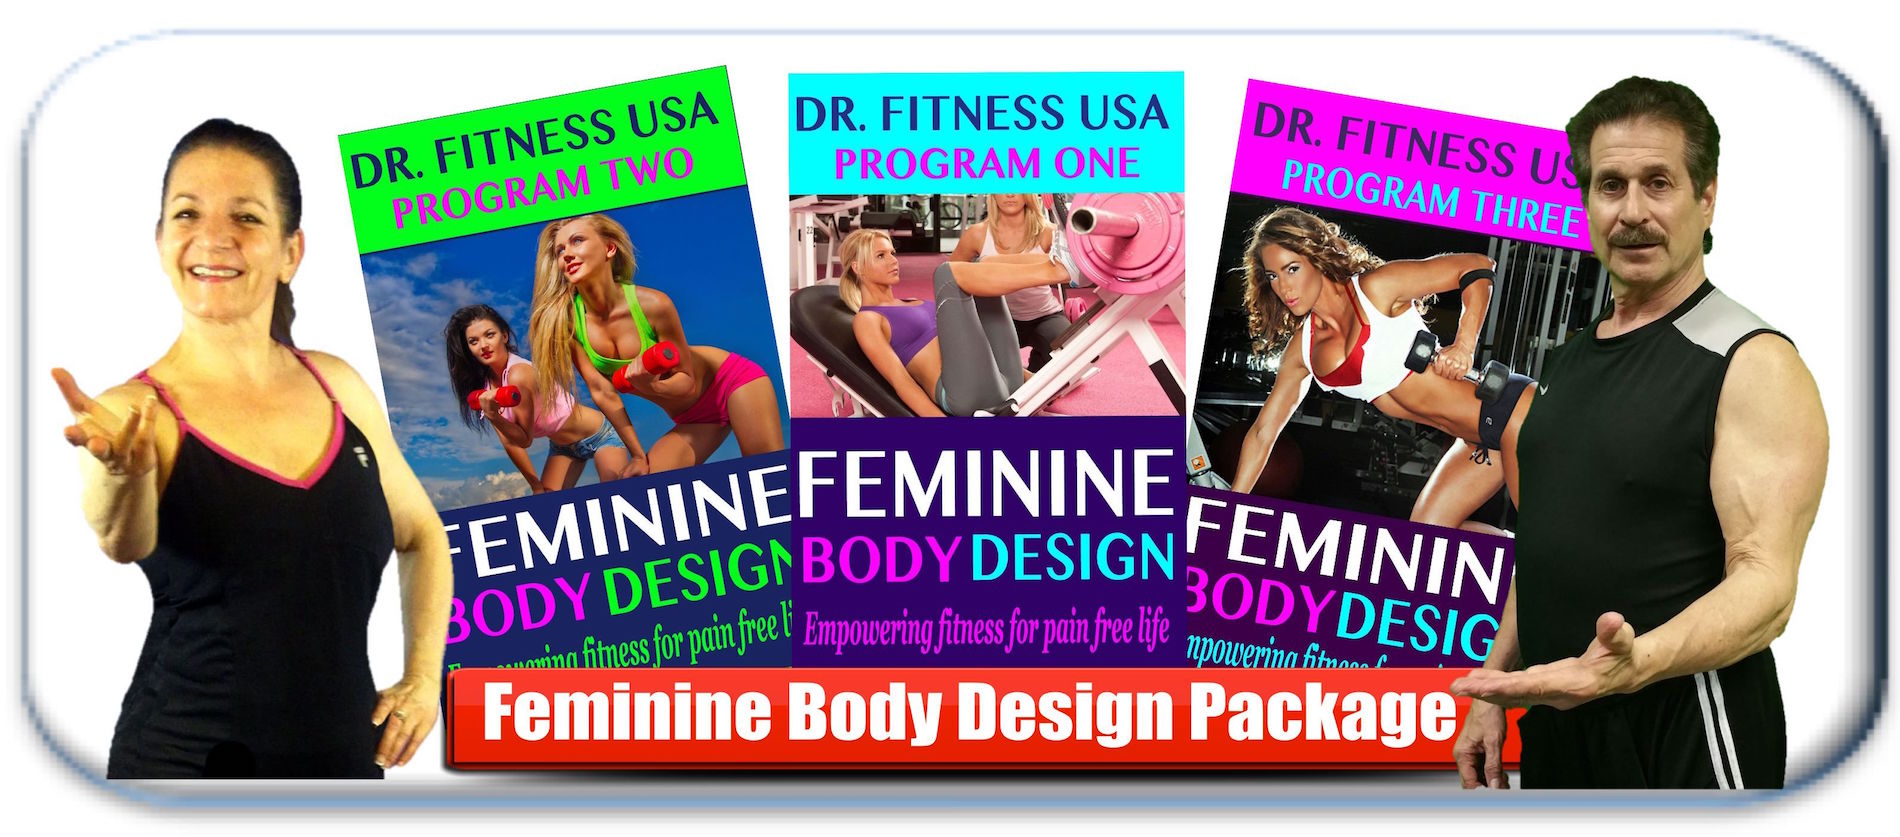 feminine body design package